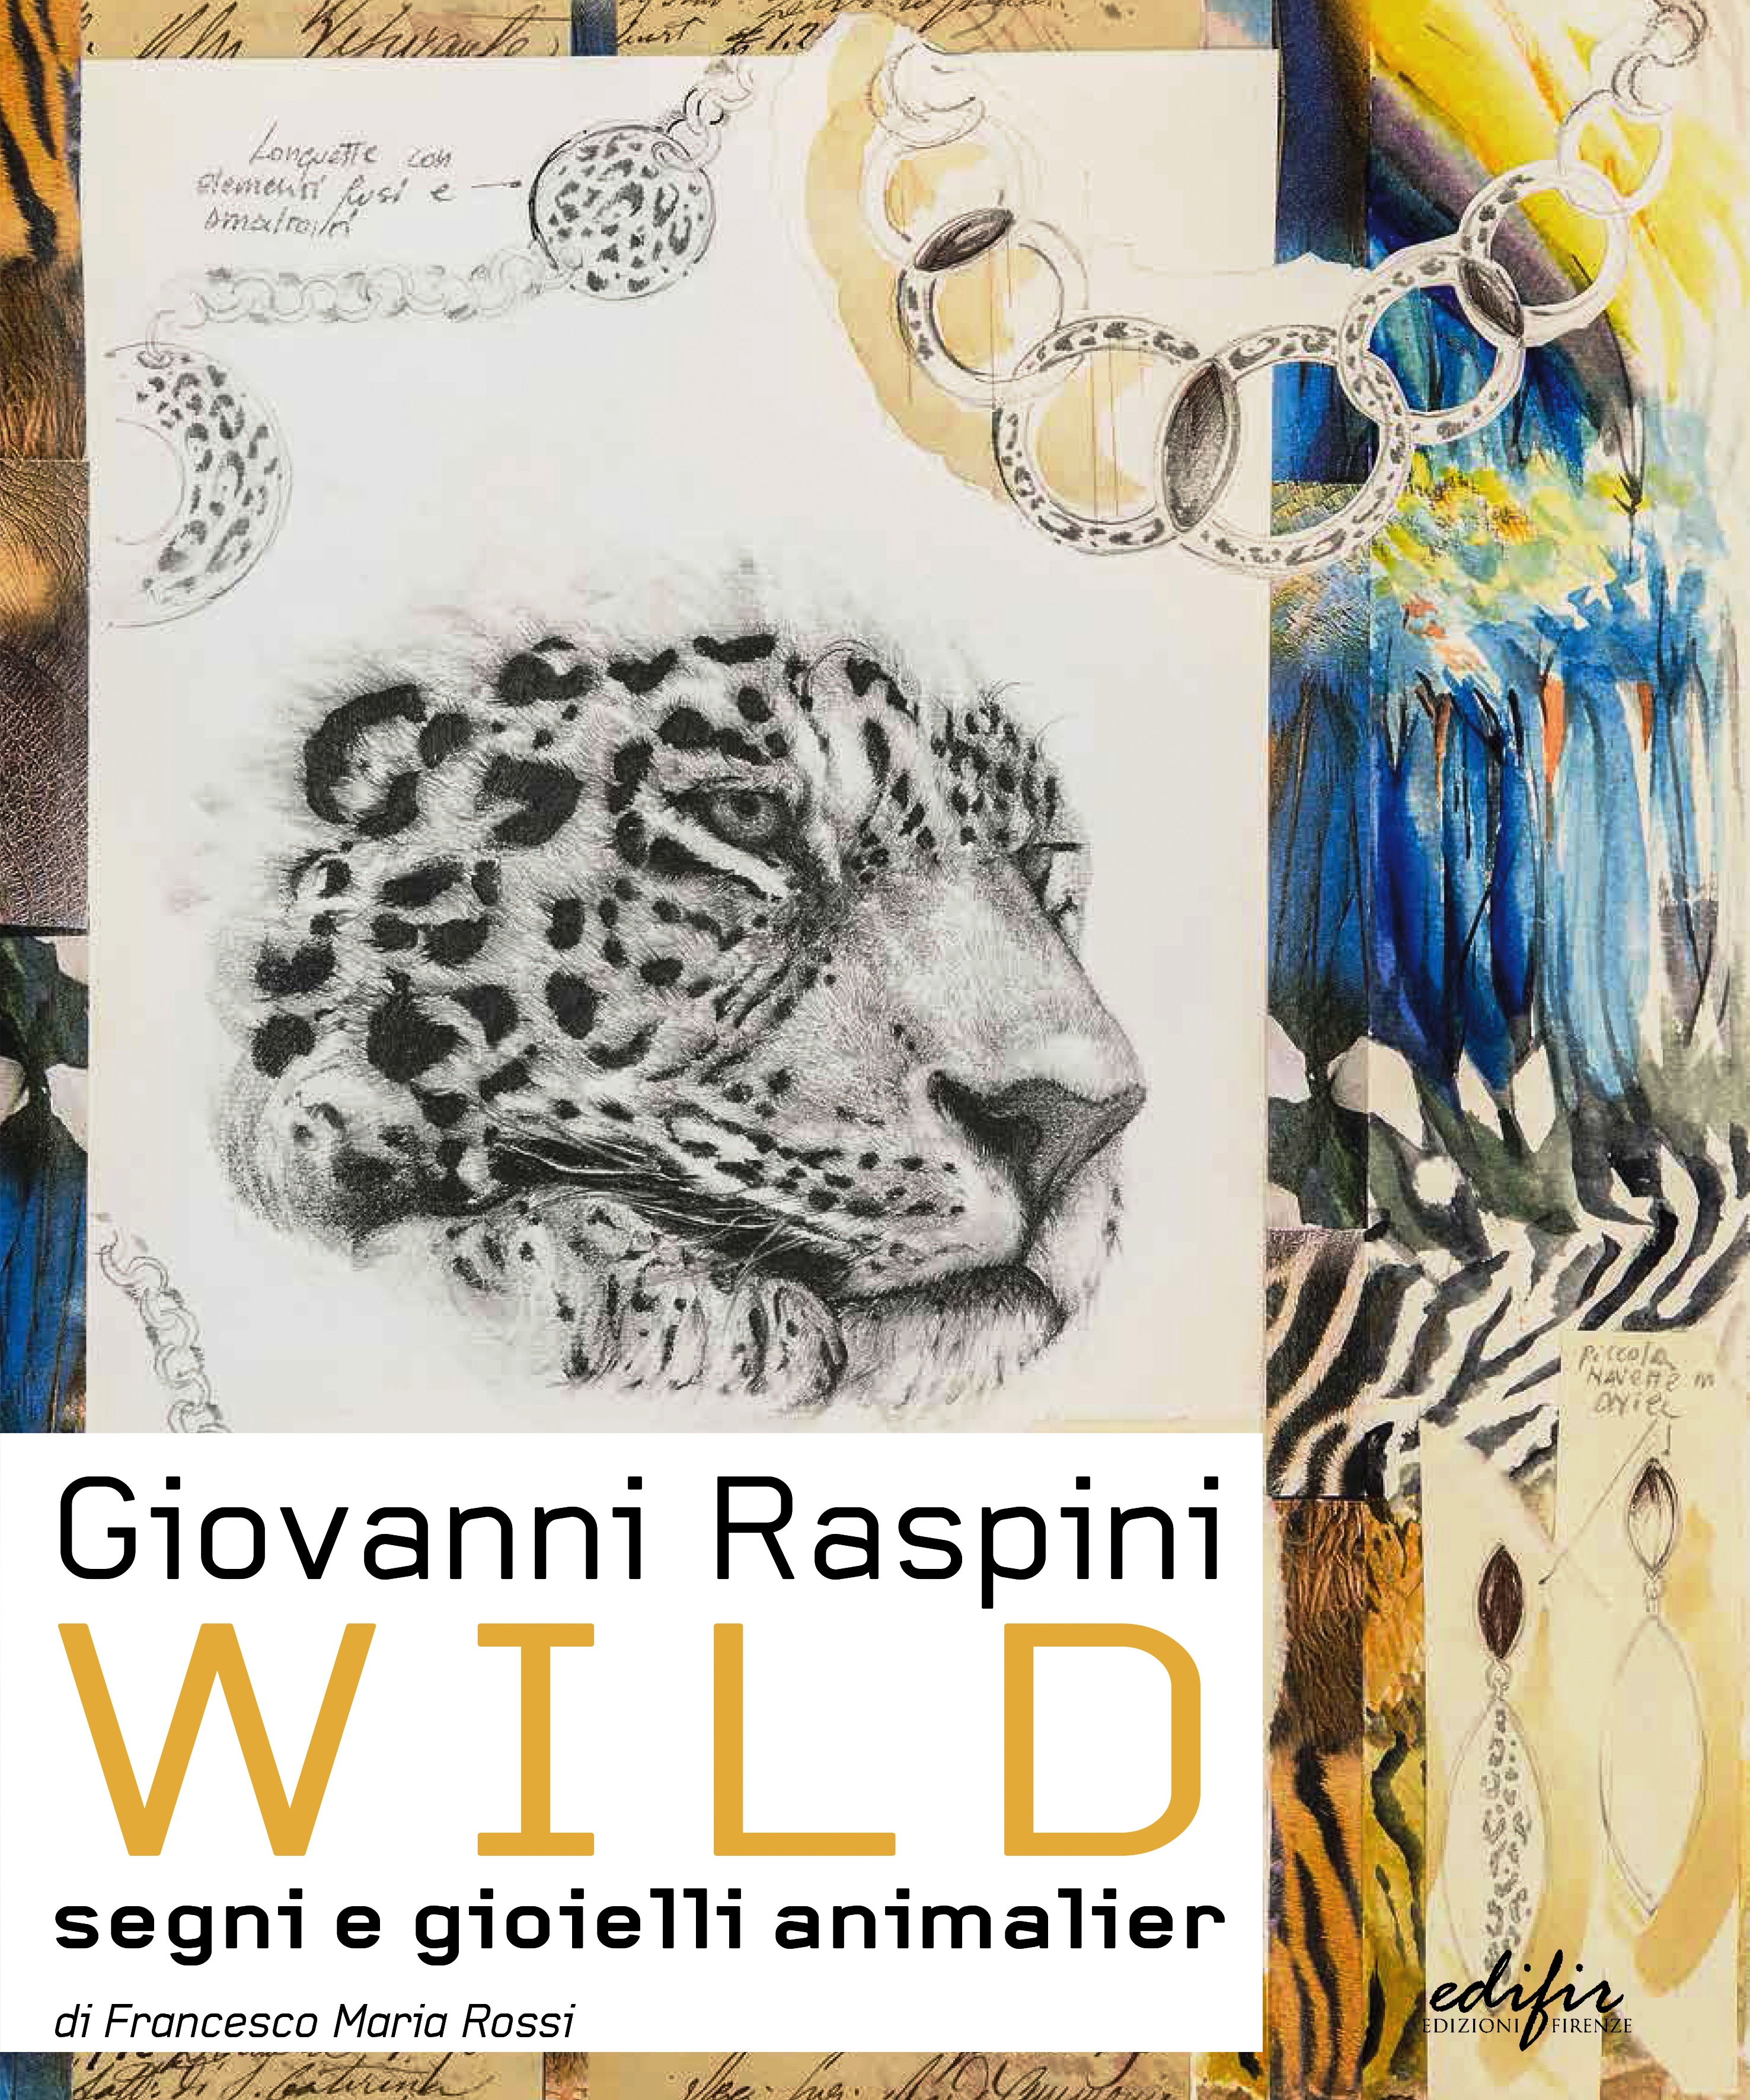 Giovanni Raspini Wild